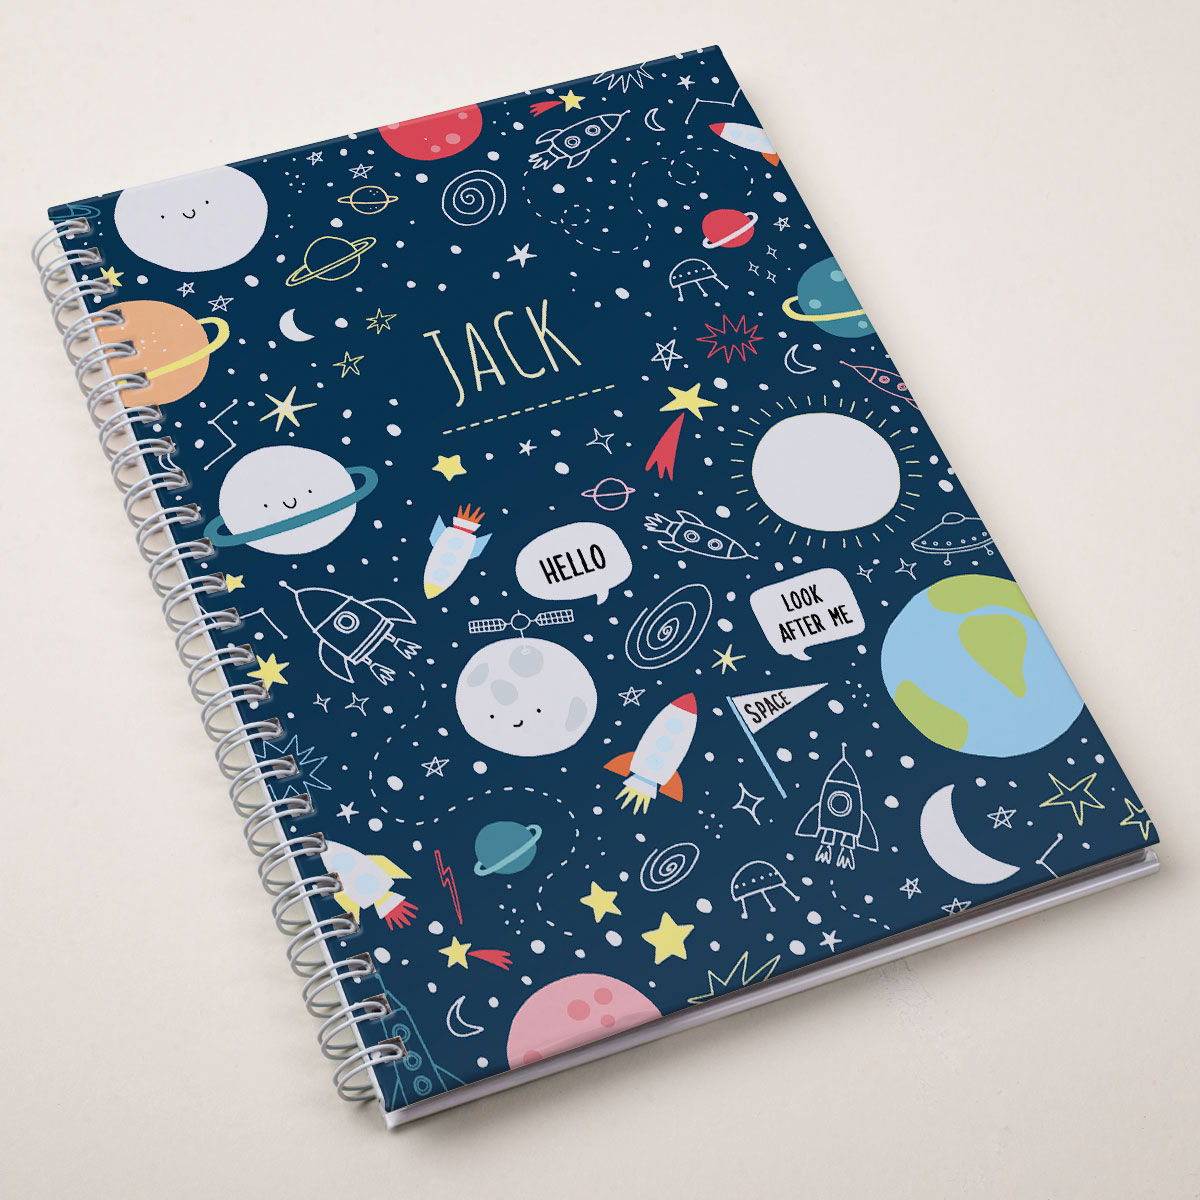 Personalised Notebook - Space Orbit